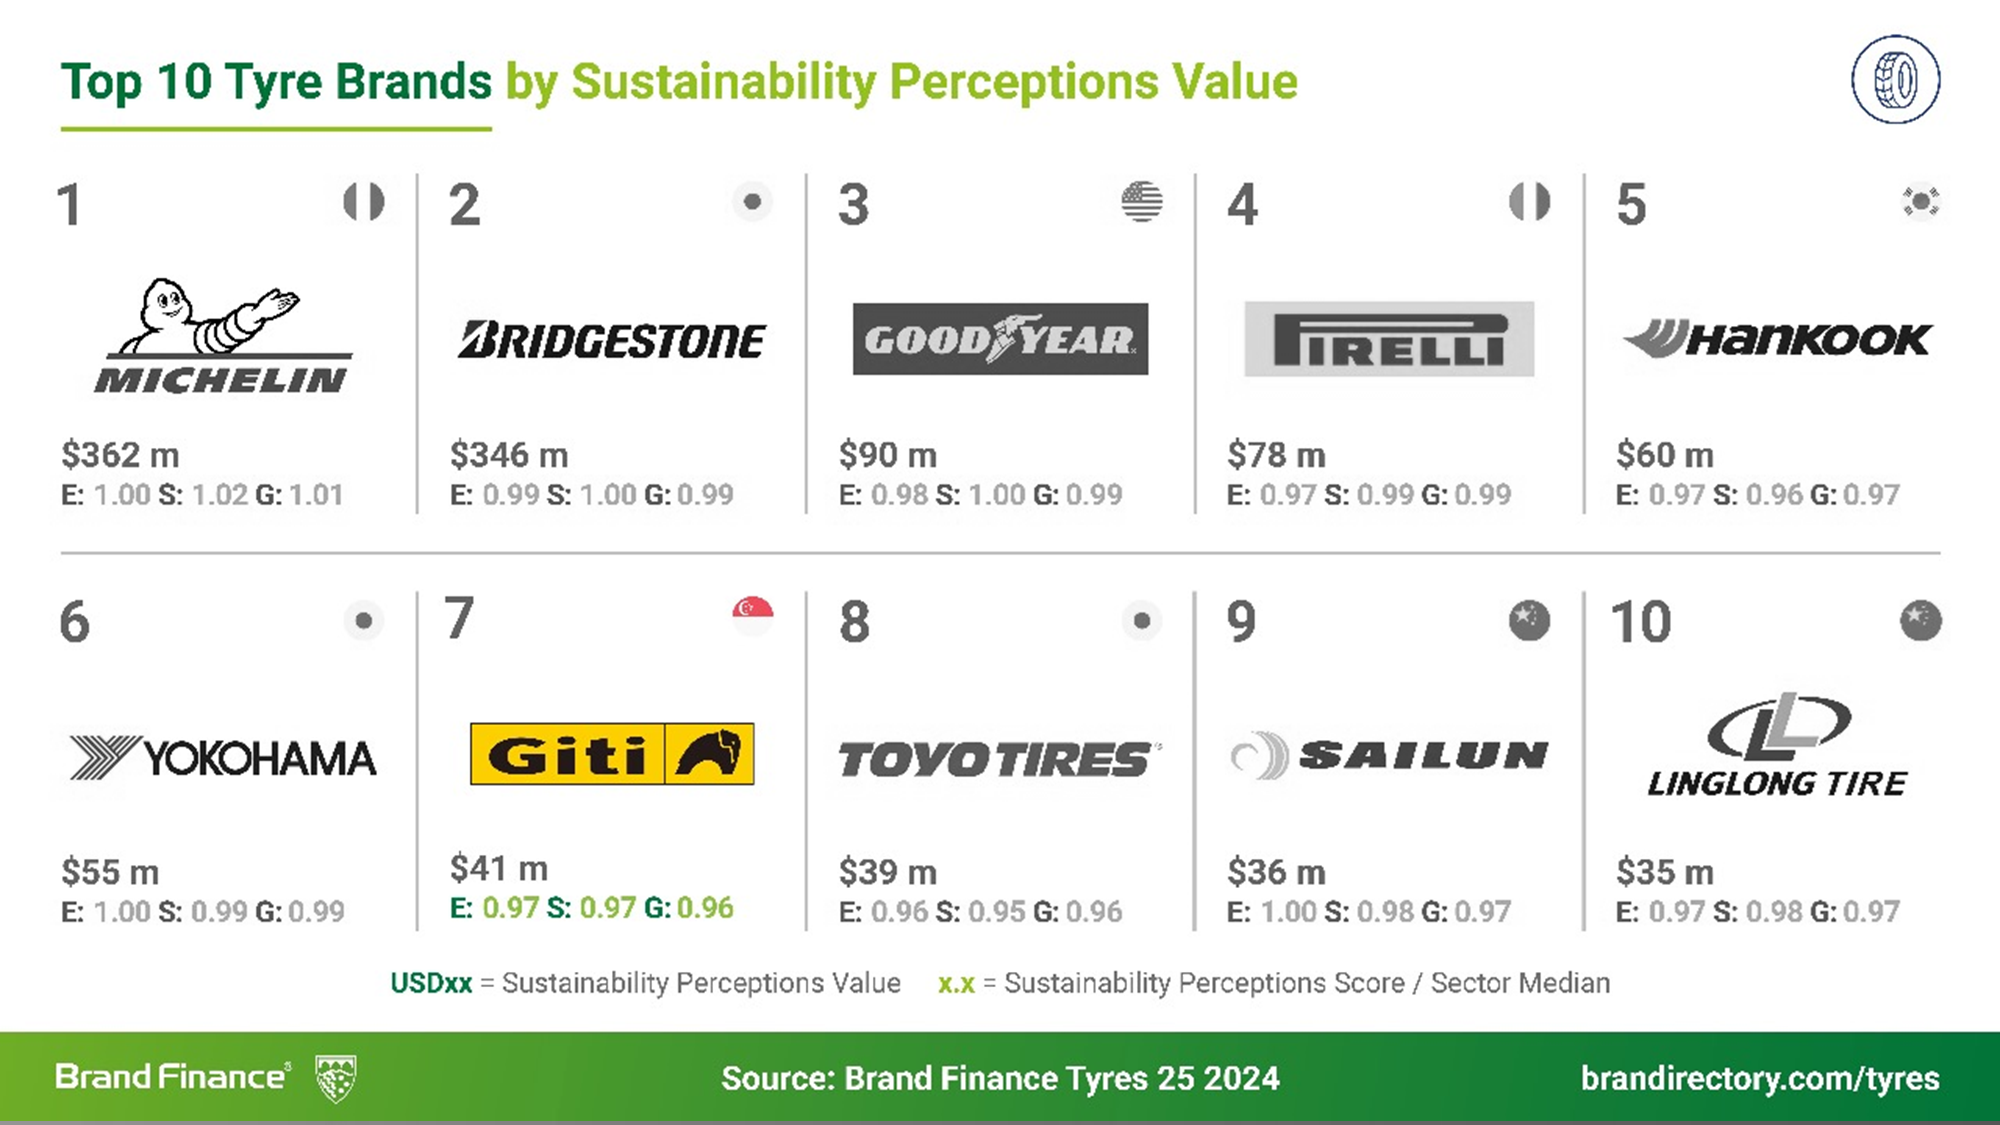 Giti es la marca de neumáticos de más rápido crecimiento en el mundo, según Brand Finance.